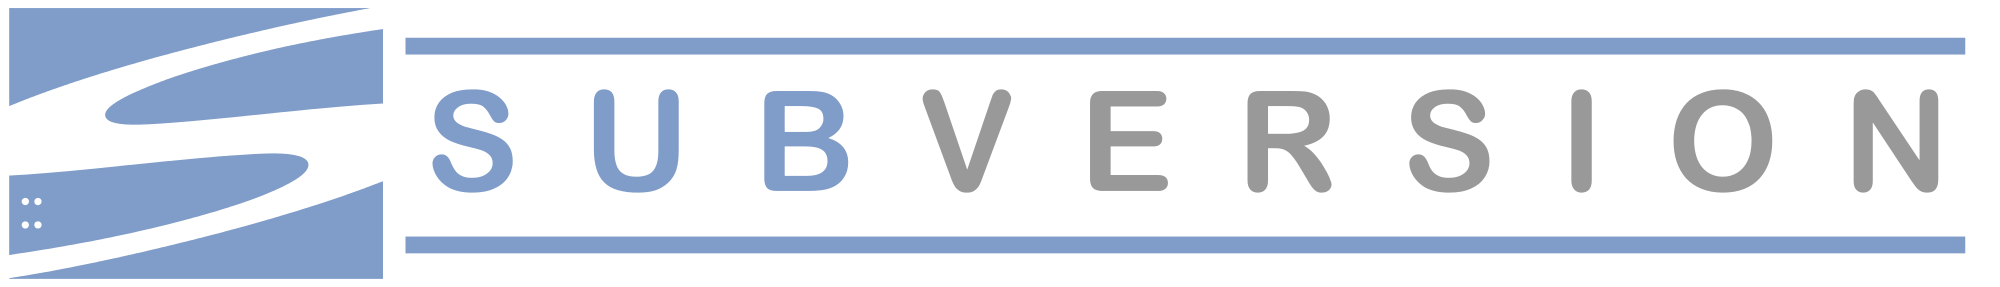 subversion logo